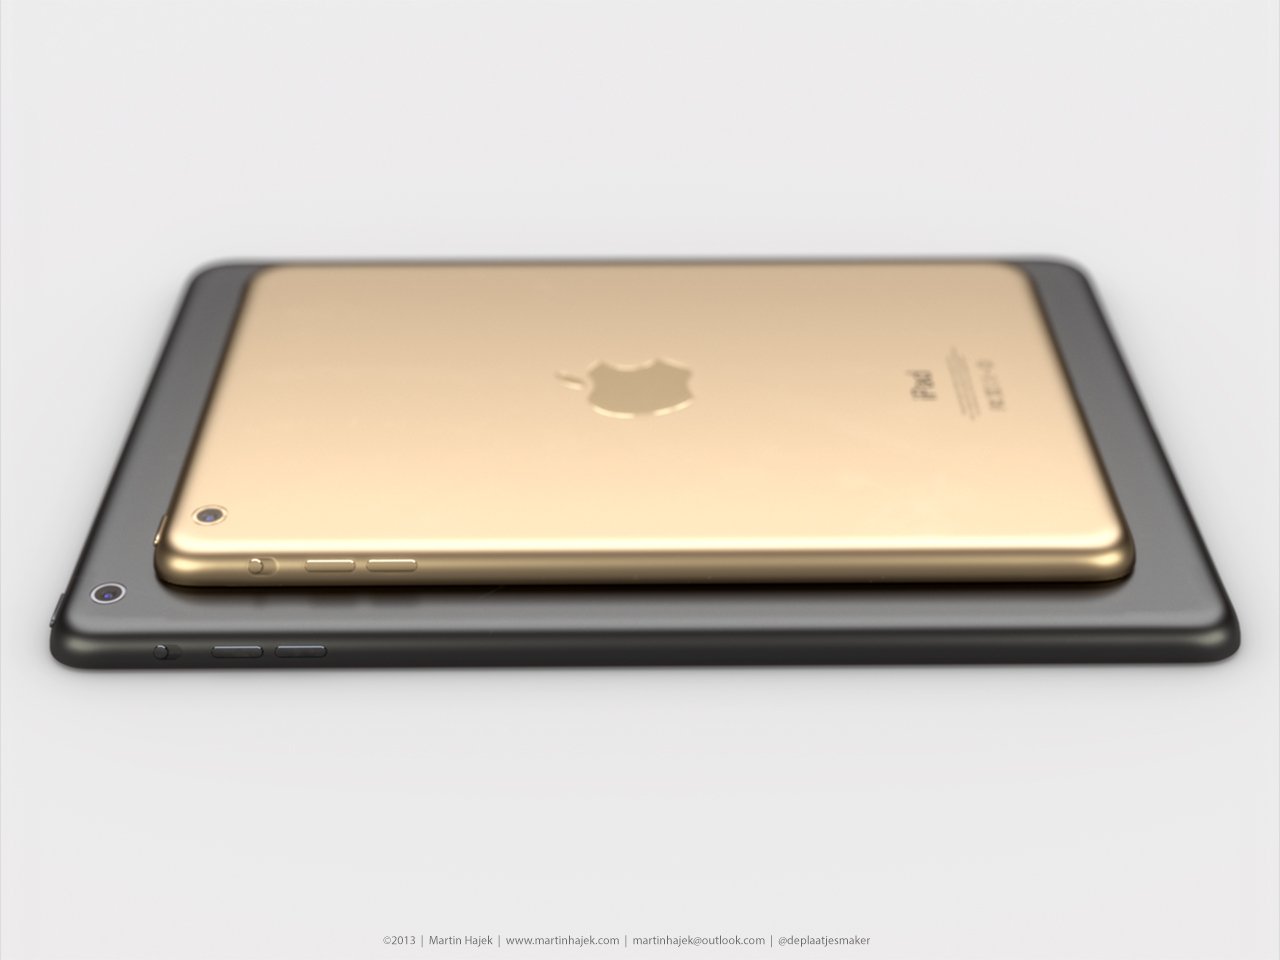 iPad mini 2 & iPad 5 in Gold mit Touch ID? 5